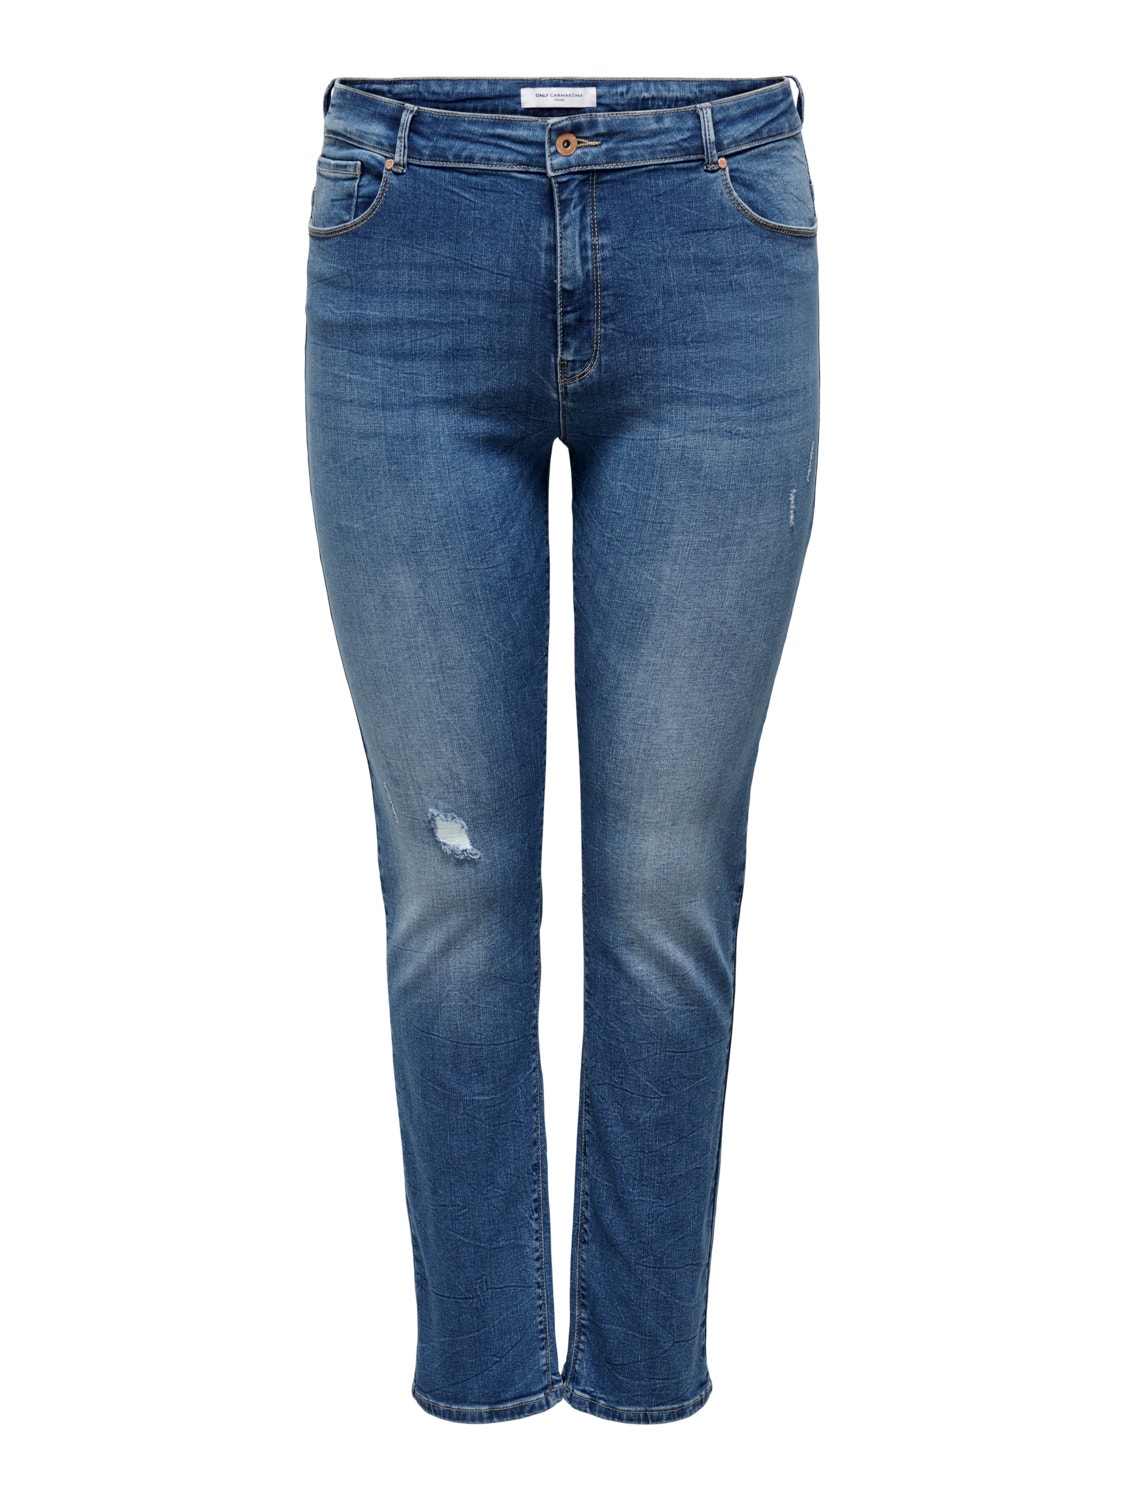 ONLY CARLaola High Waist Jeans -Light Blue Denim - 15245694